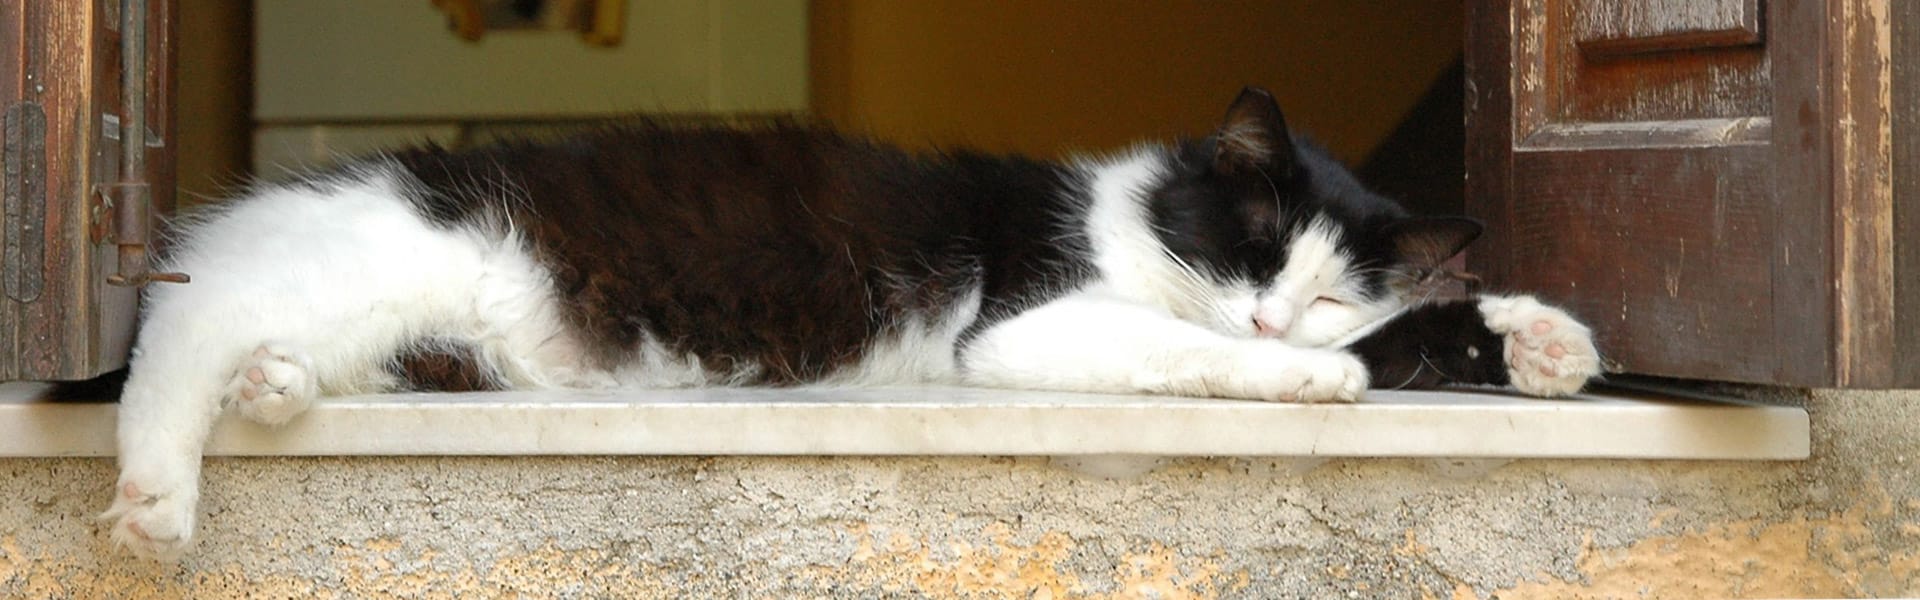 baubiologische Bauberatung schafft gesunde Schlafplätze - schlafende Katze auf Fensterbank hat auch einen